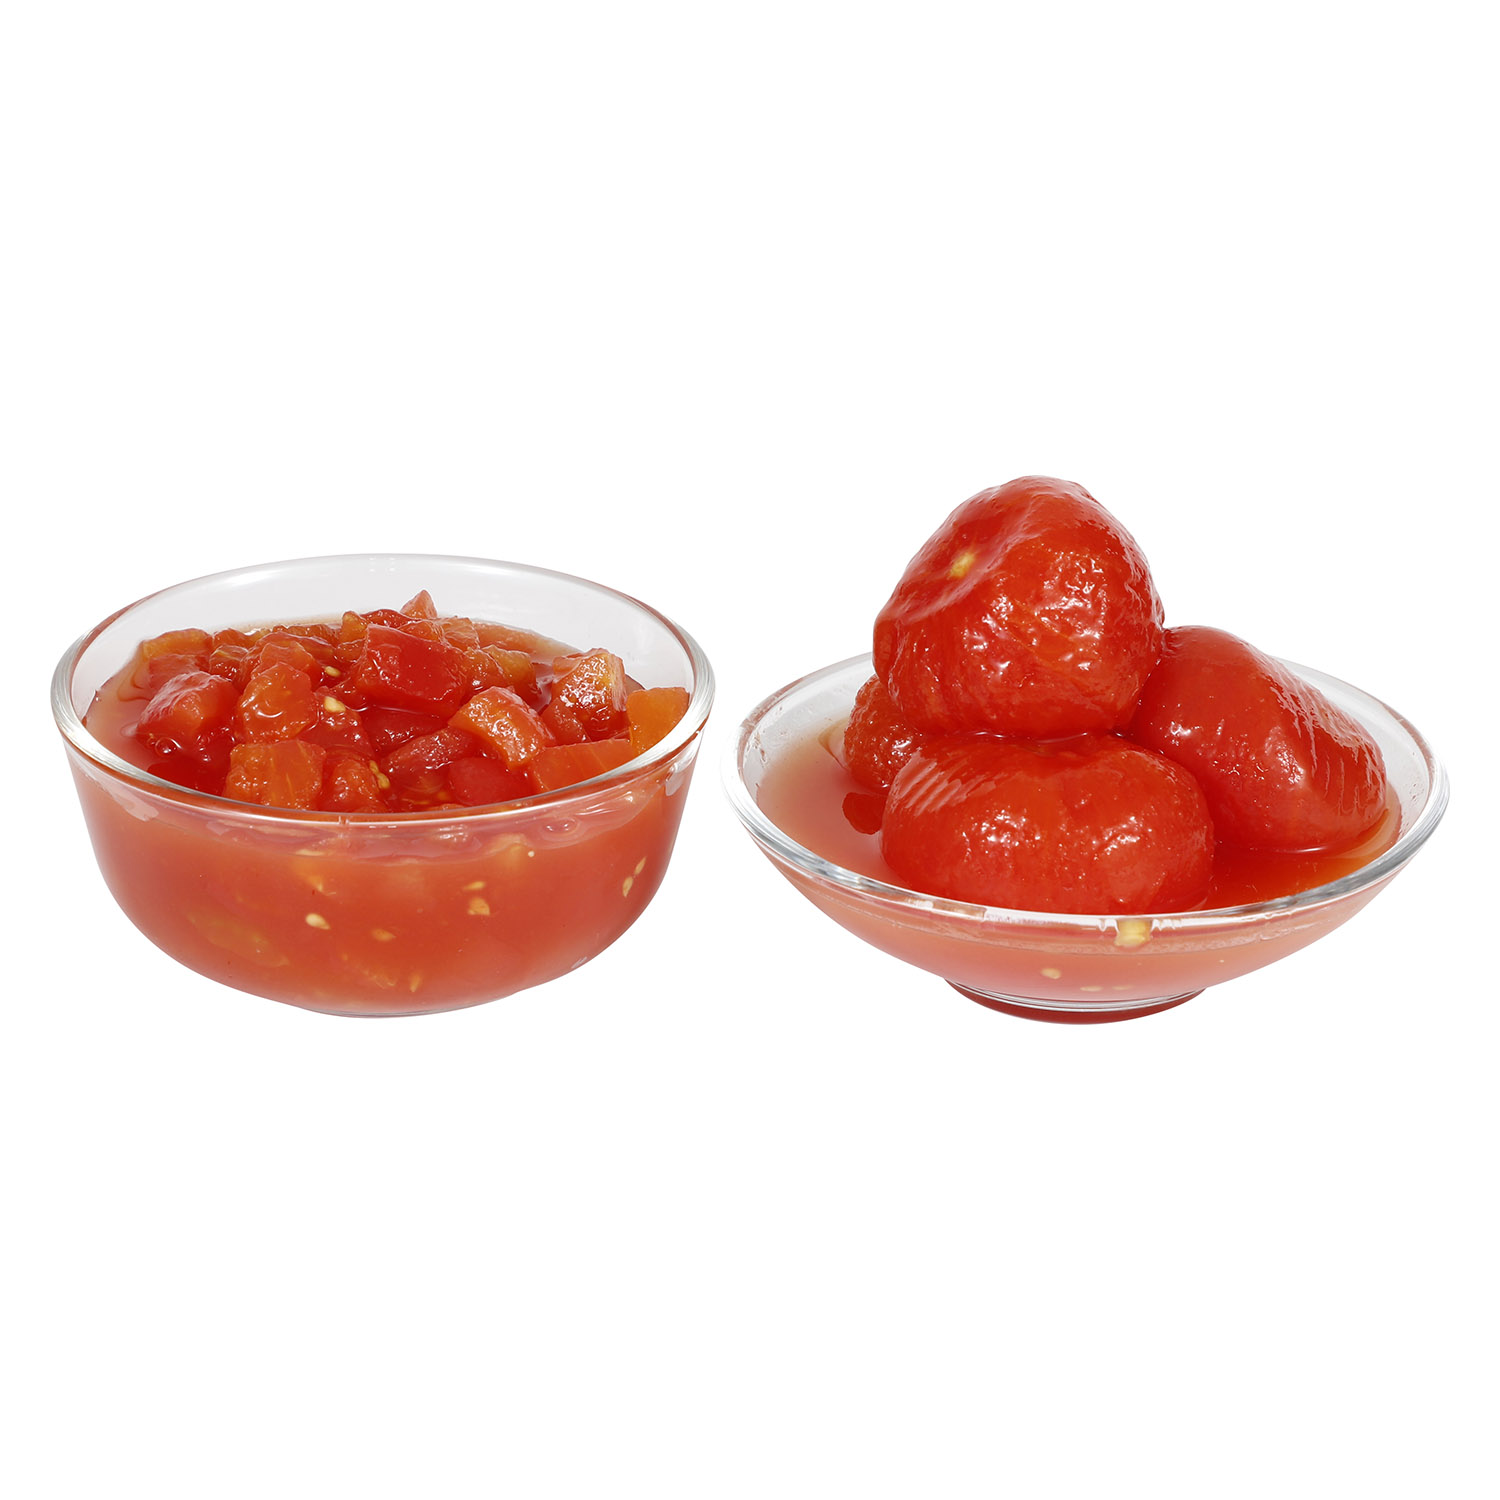 Tomate écorcée entière &  tomate en dé